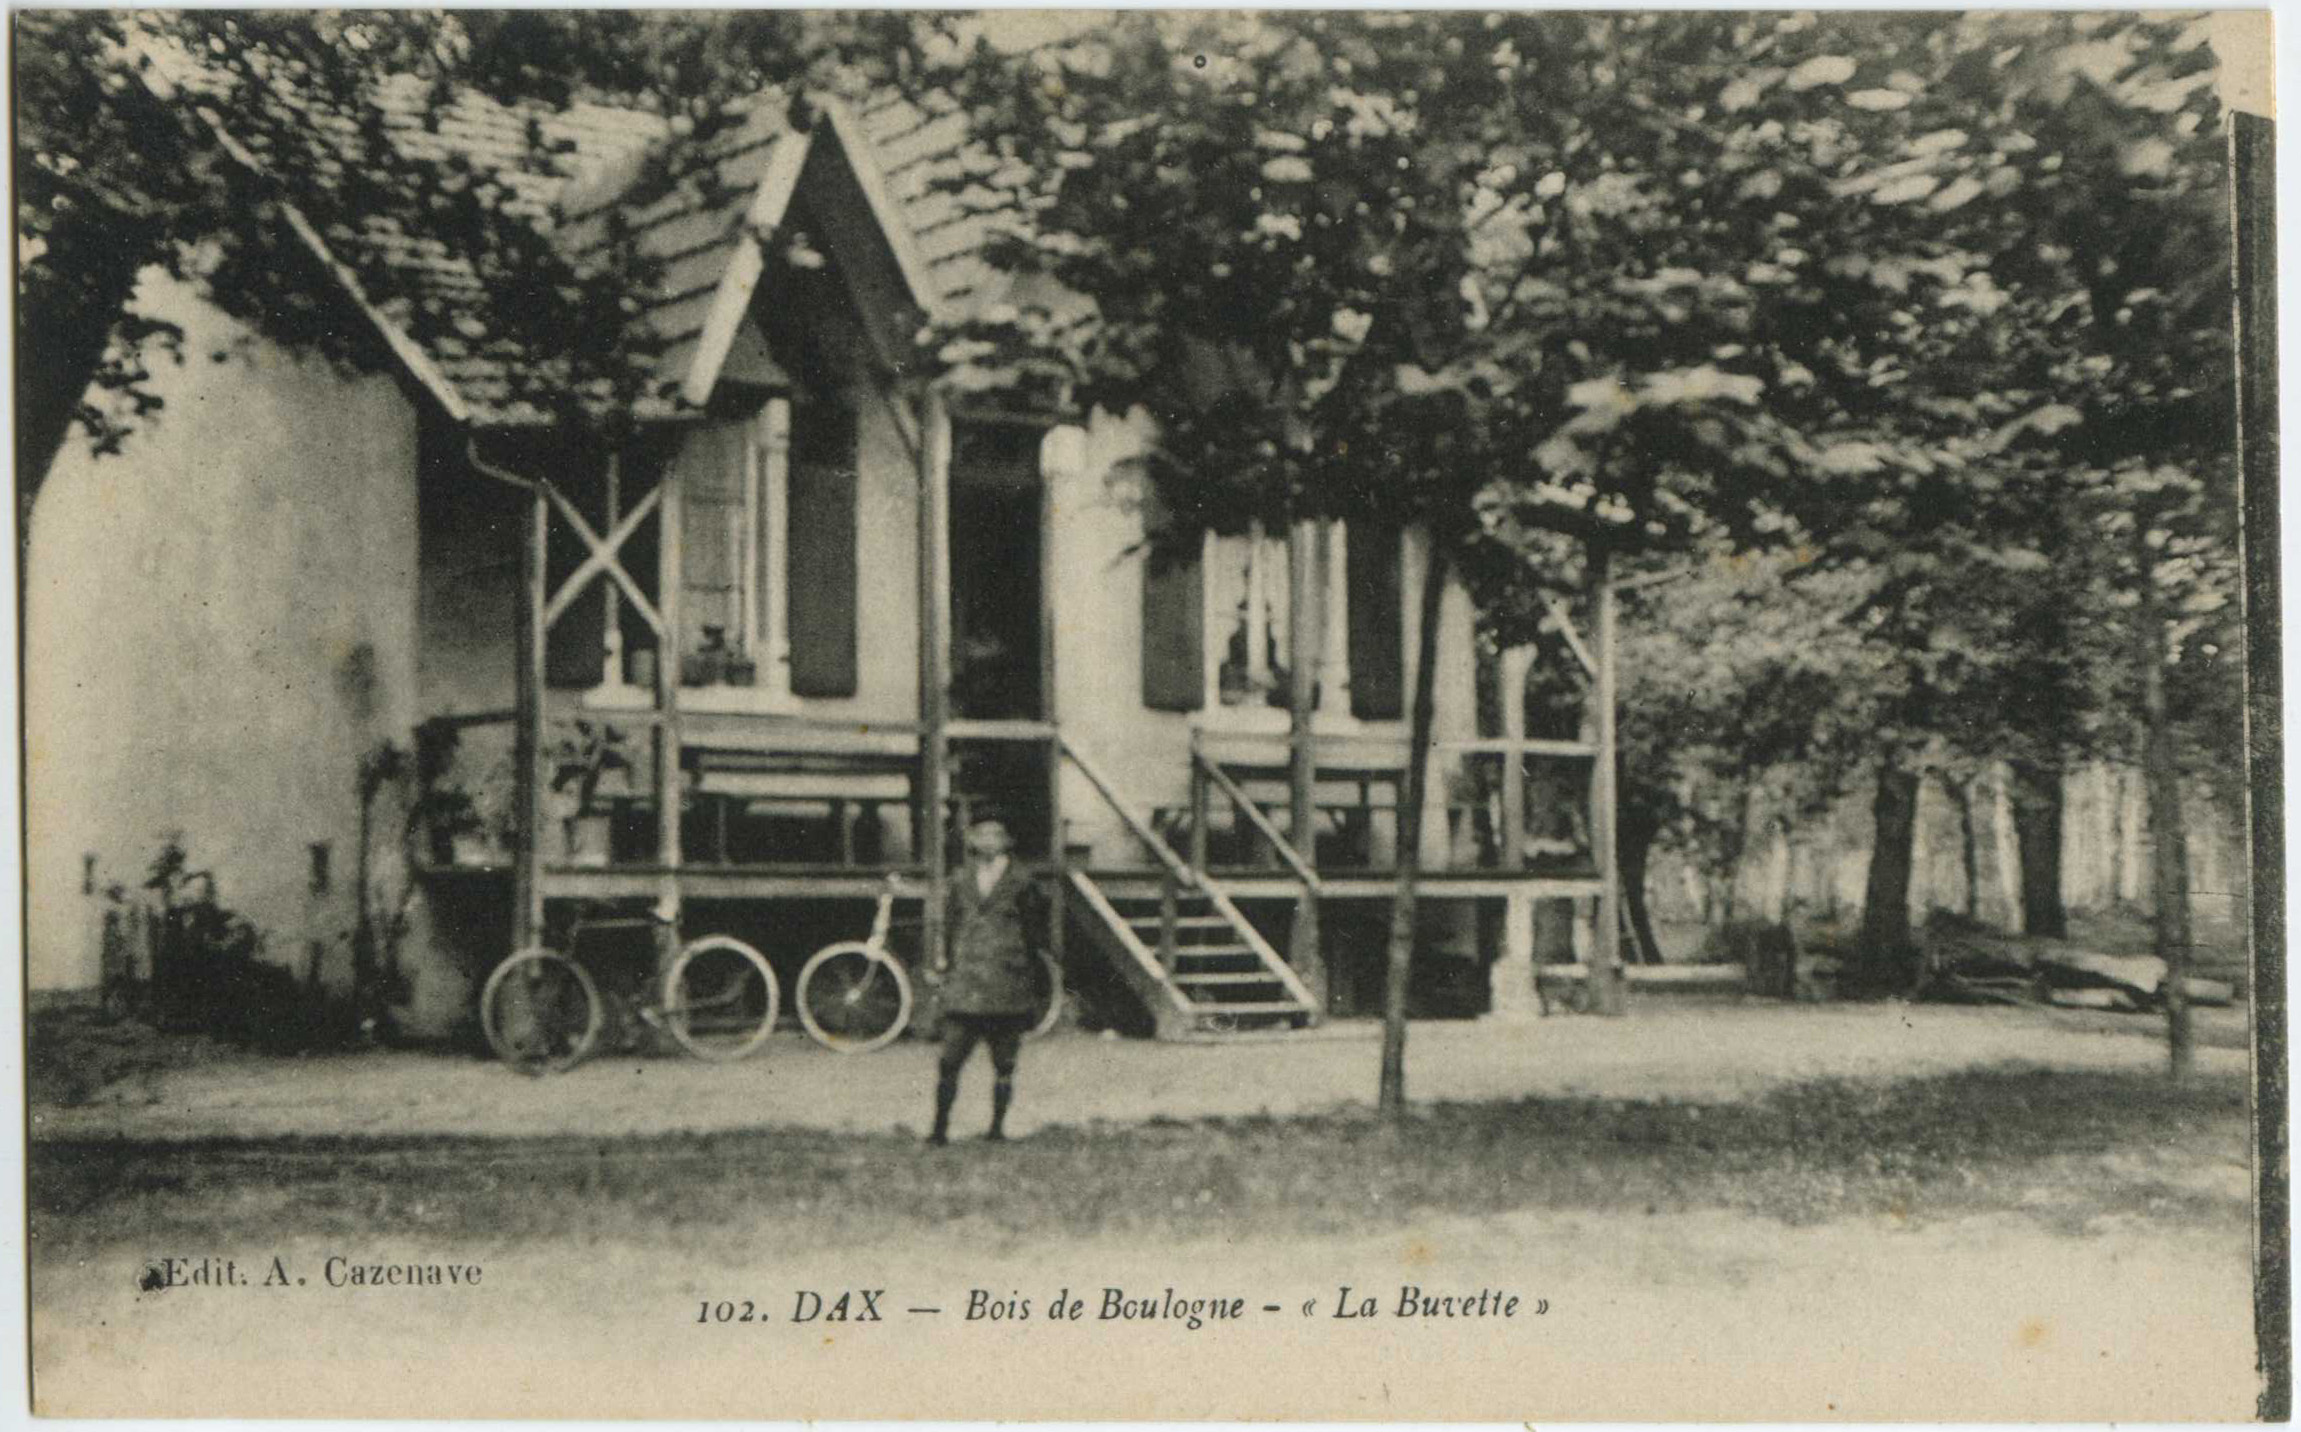 Dax - Bois de Boulogne - « La Buvette »